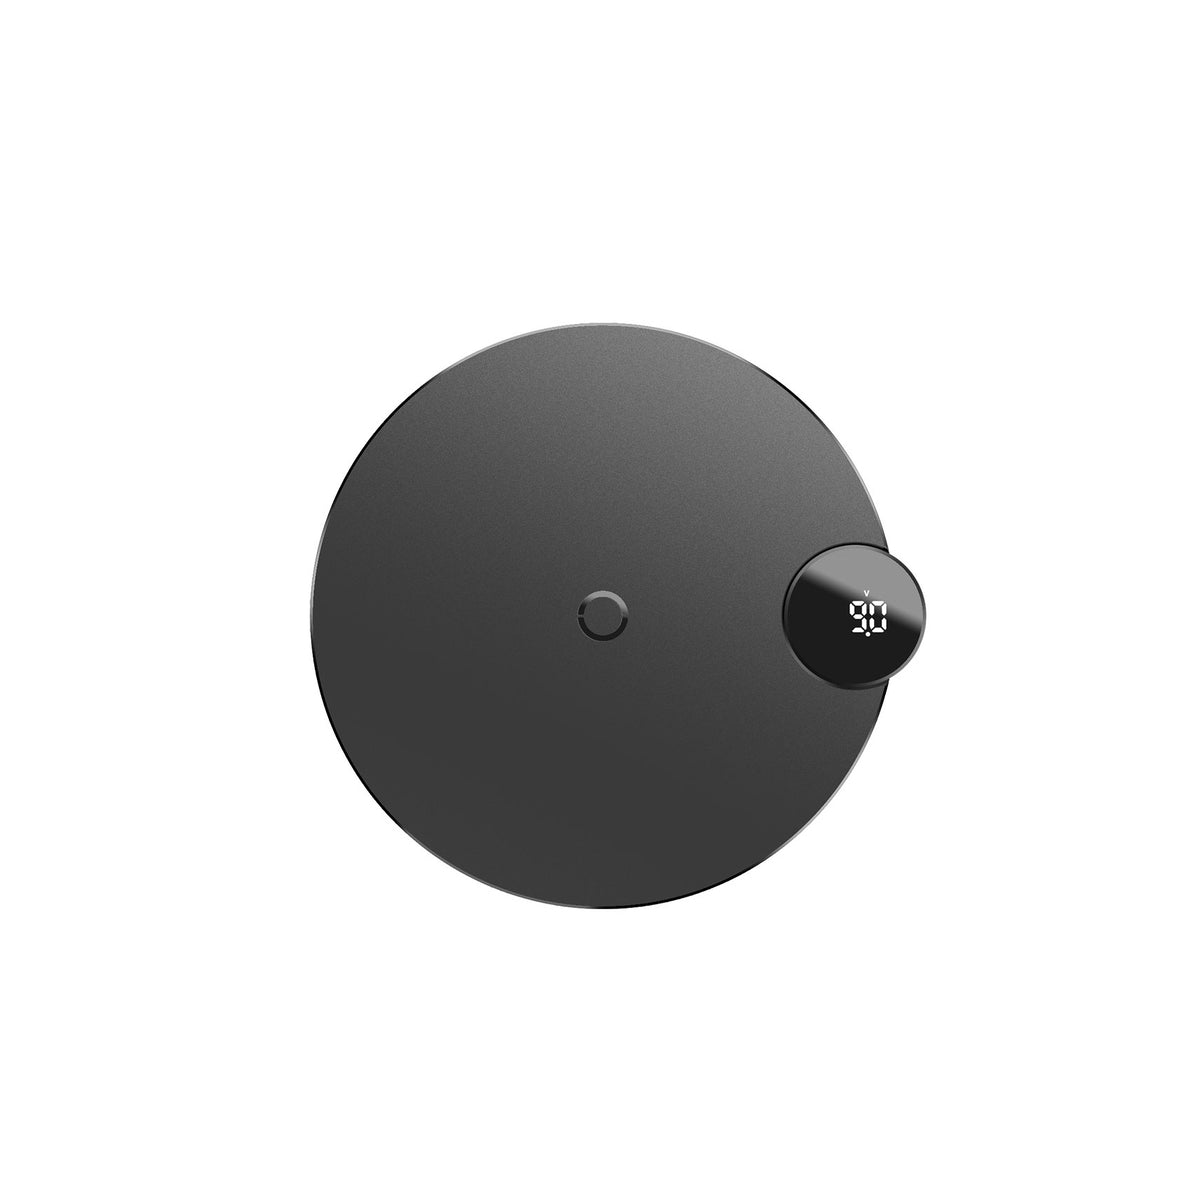 Bezdrátová nabíječka Baseus, s LED displejem, černá